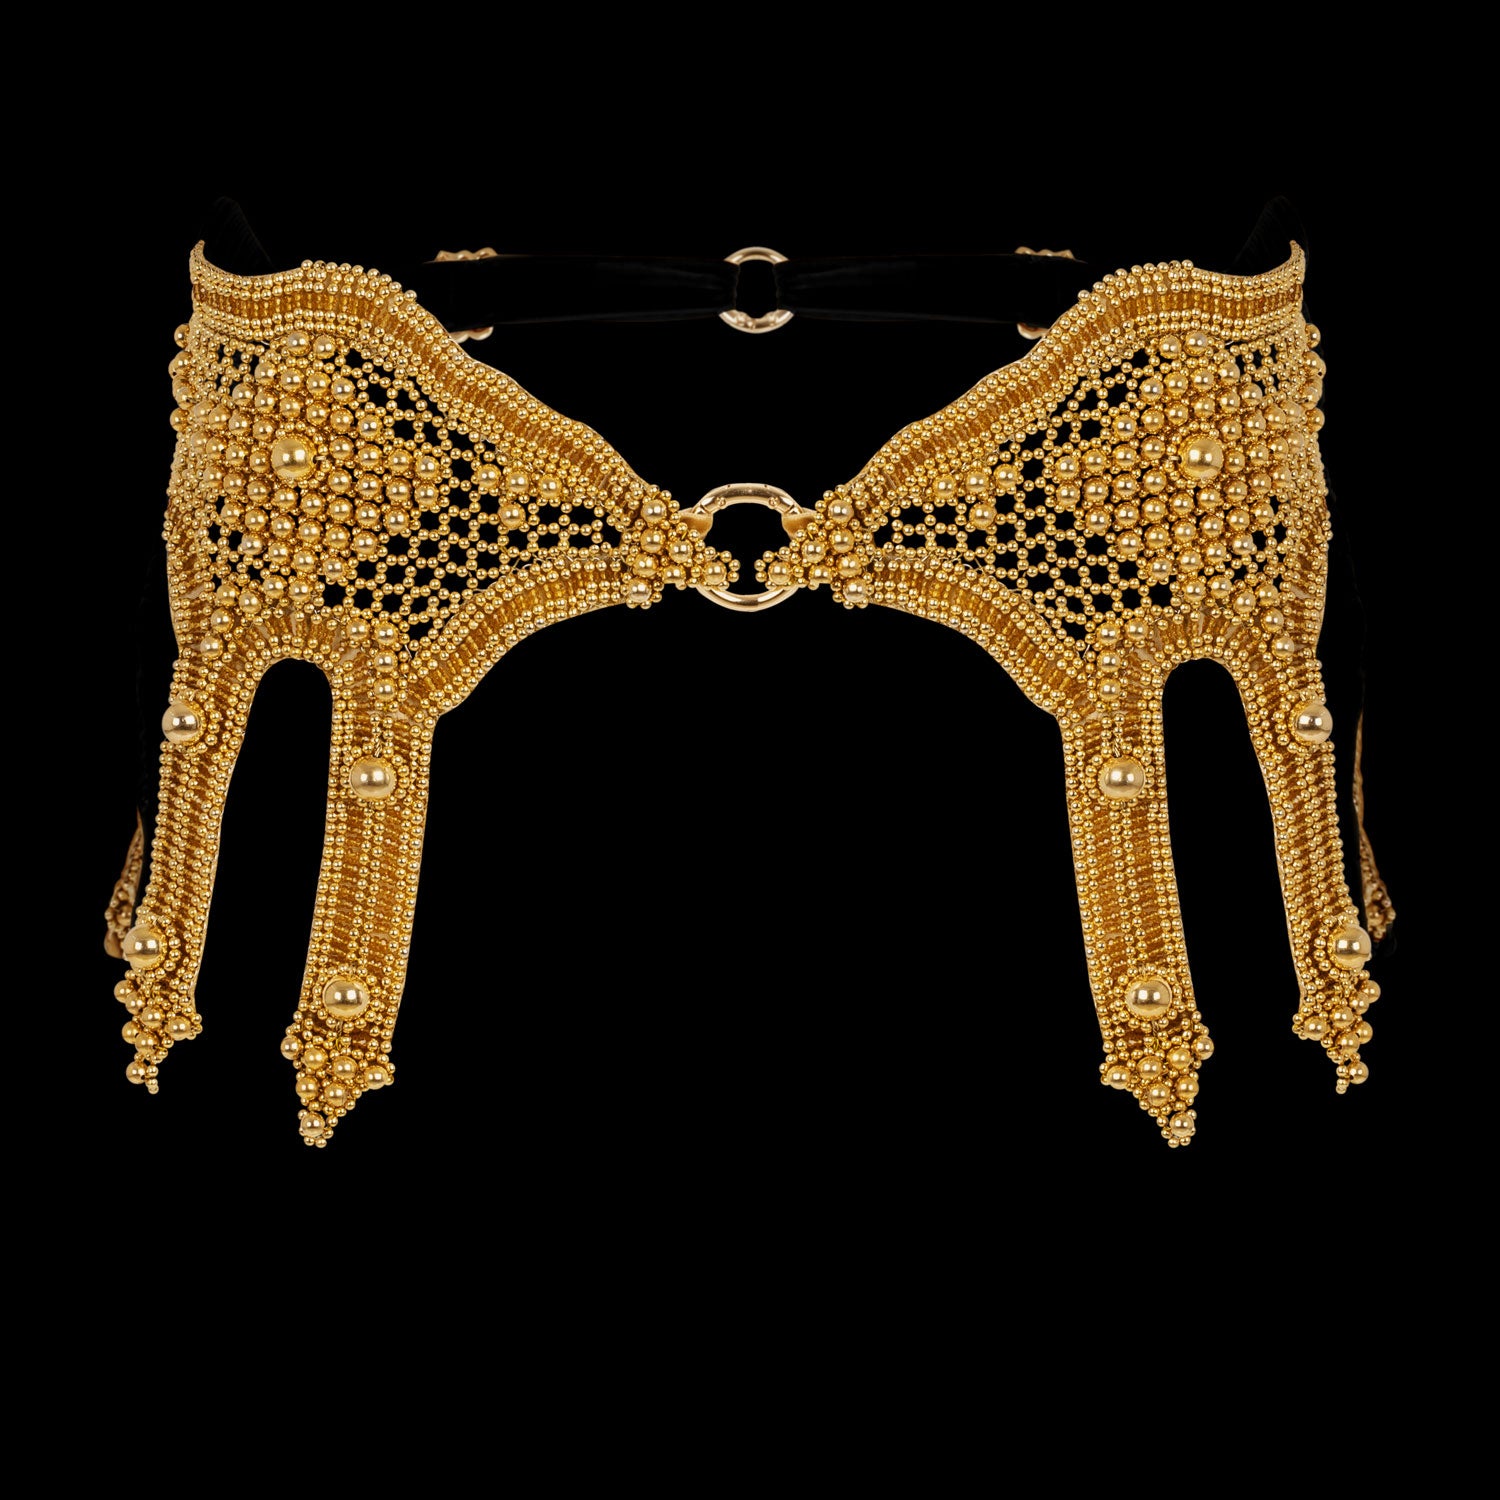 Khutulun Modular Garter Belt in Gold